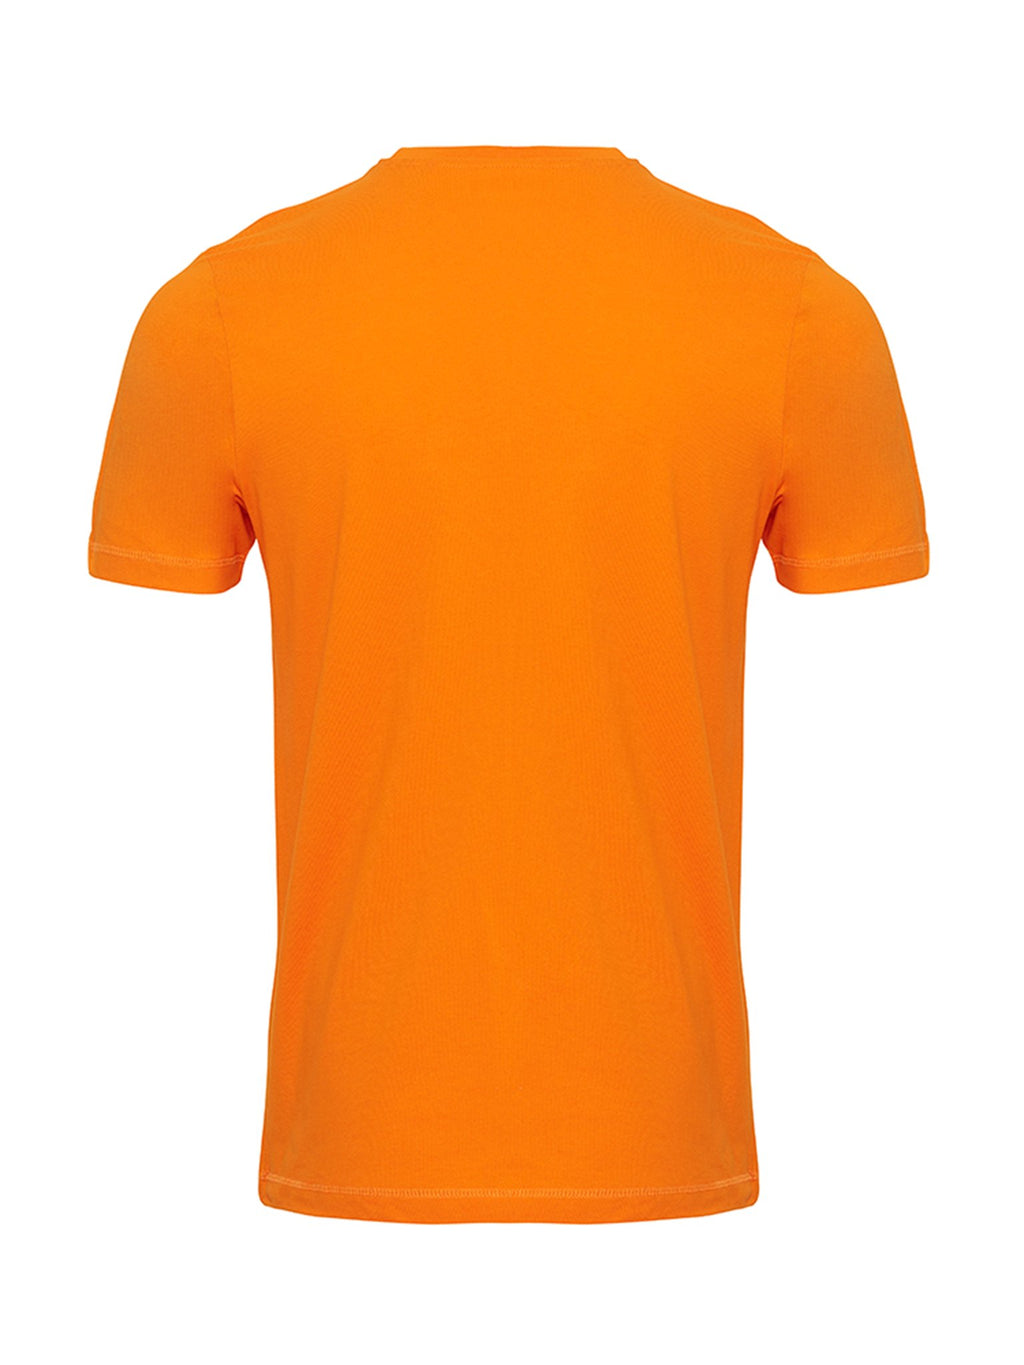 Bio -Basis -T -Shirt - Orange